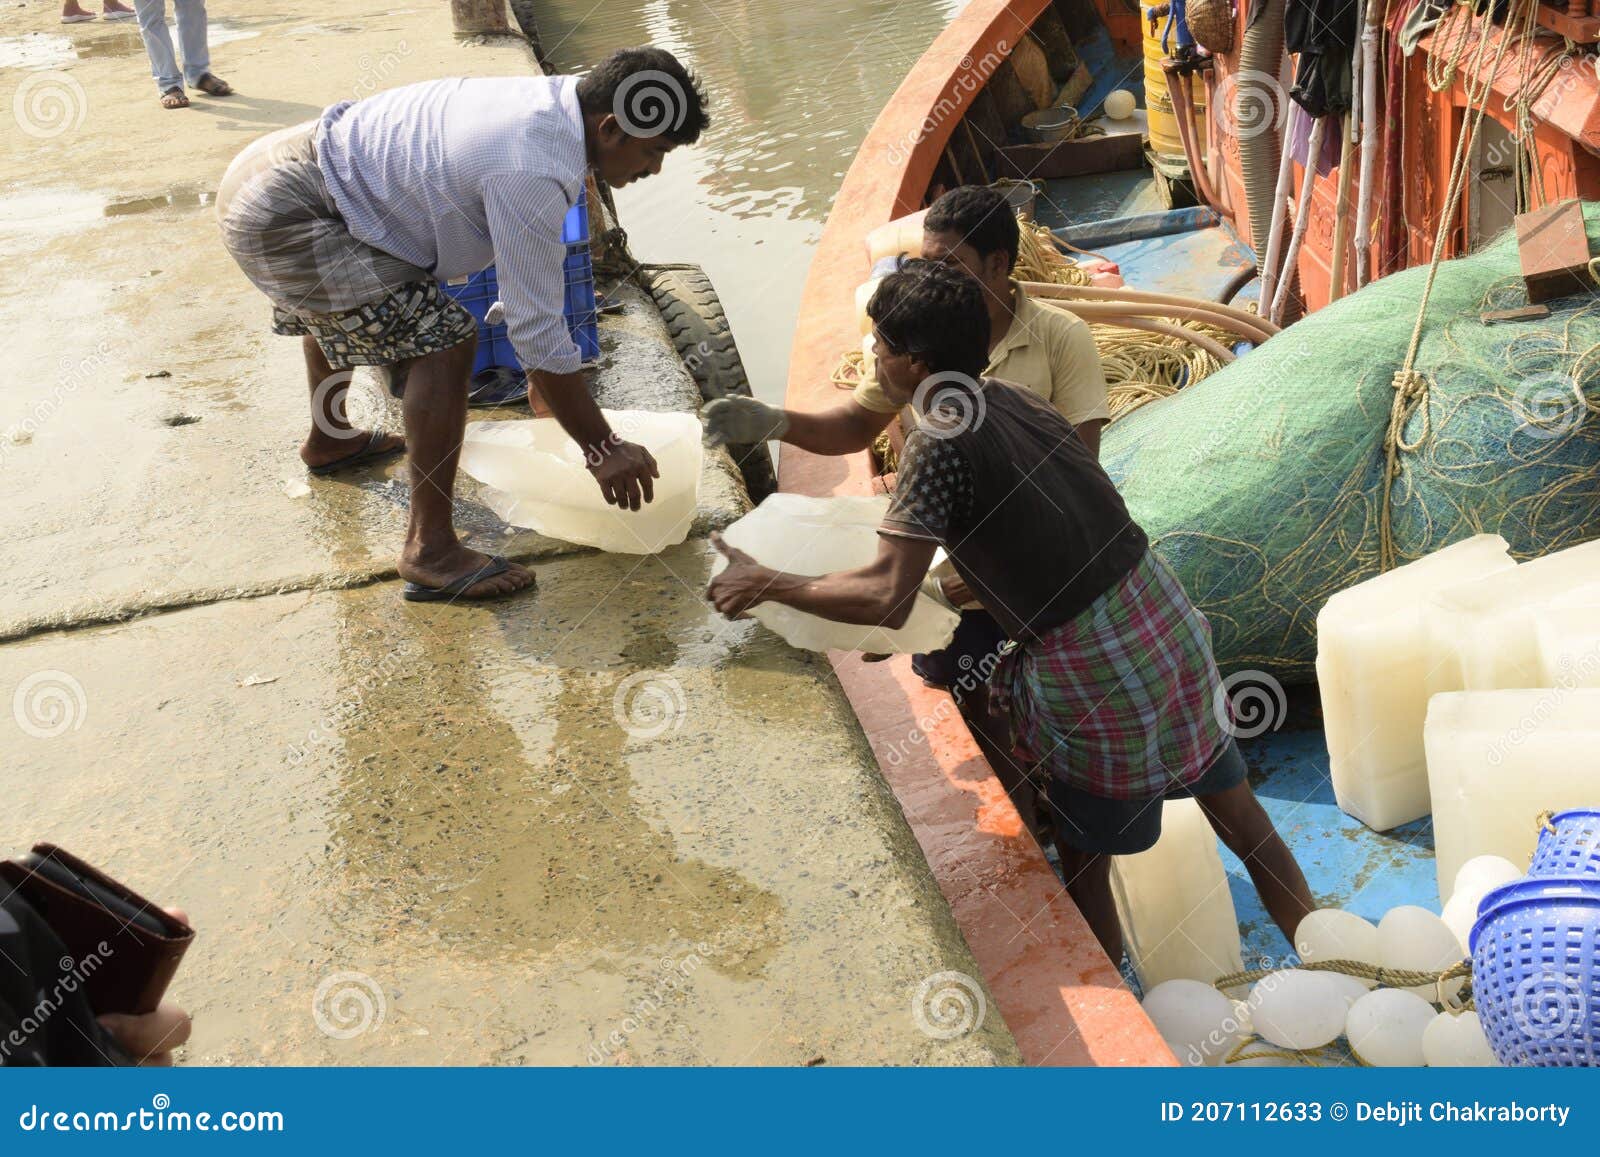 People Loading Ice Blocks, Fishing Nets for Fishing Voyage at Frezarganj  Fish Harbor, West Bengal, India Editorial Stock Photo - Image of voyage,  loading: 207112633